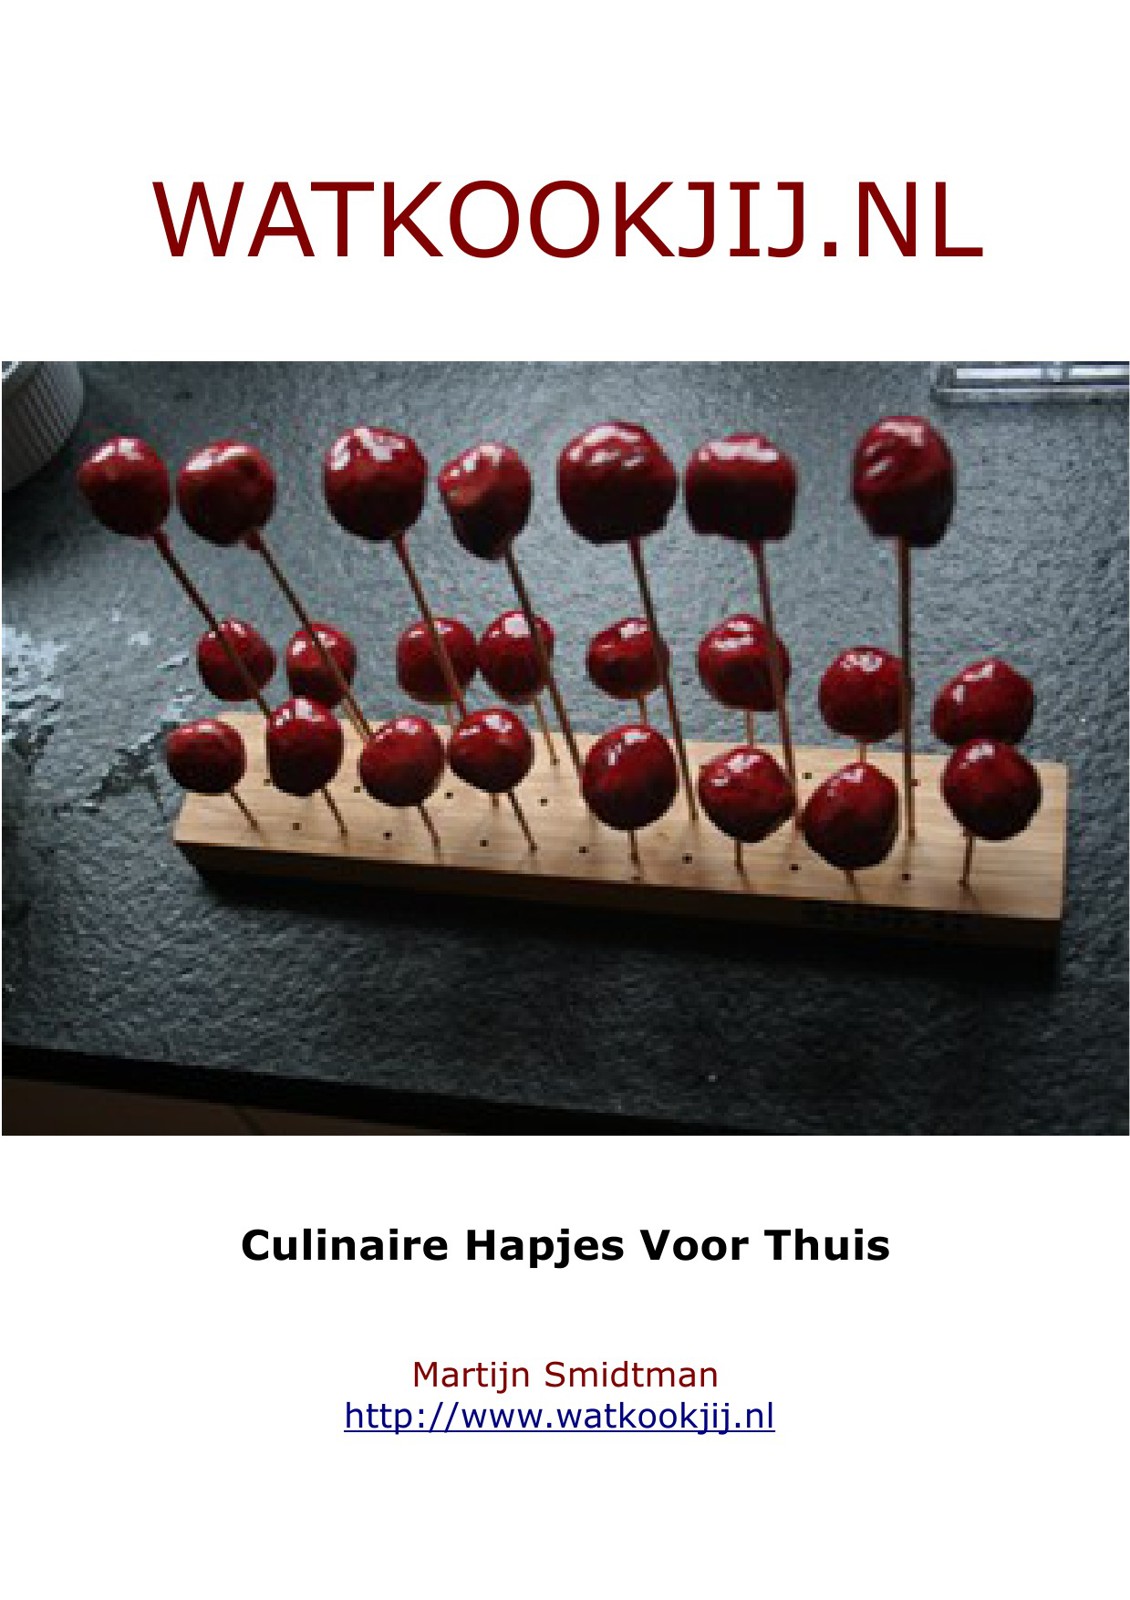 Watkookjij.nl